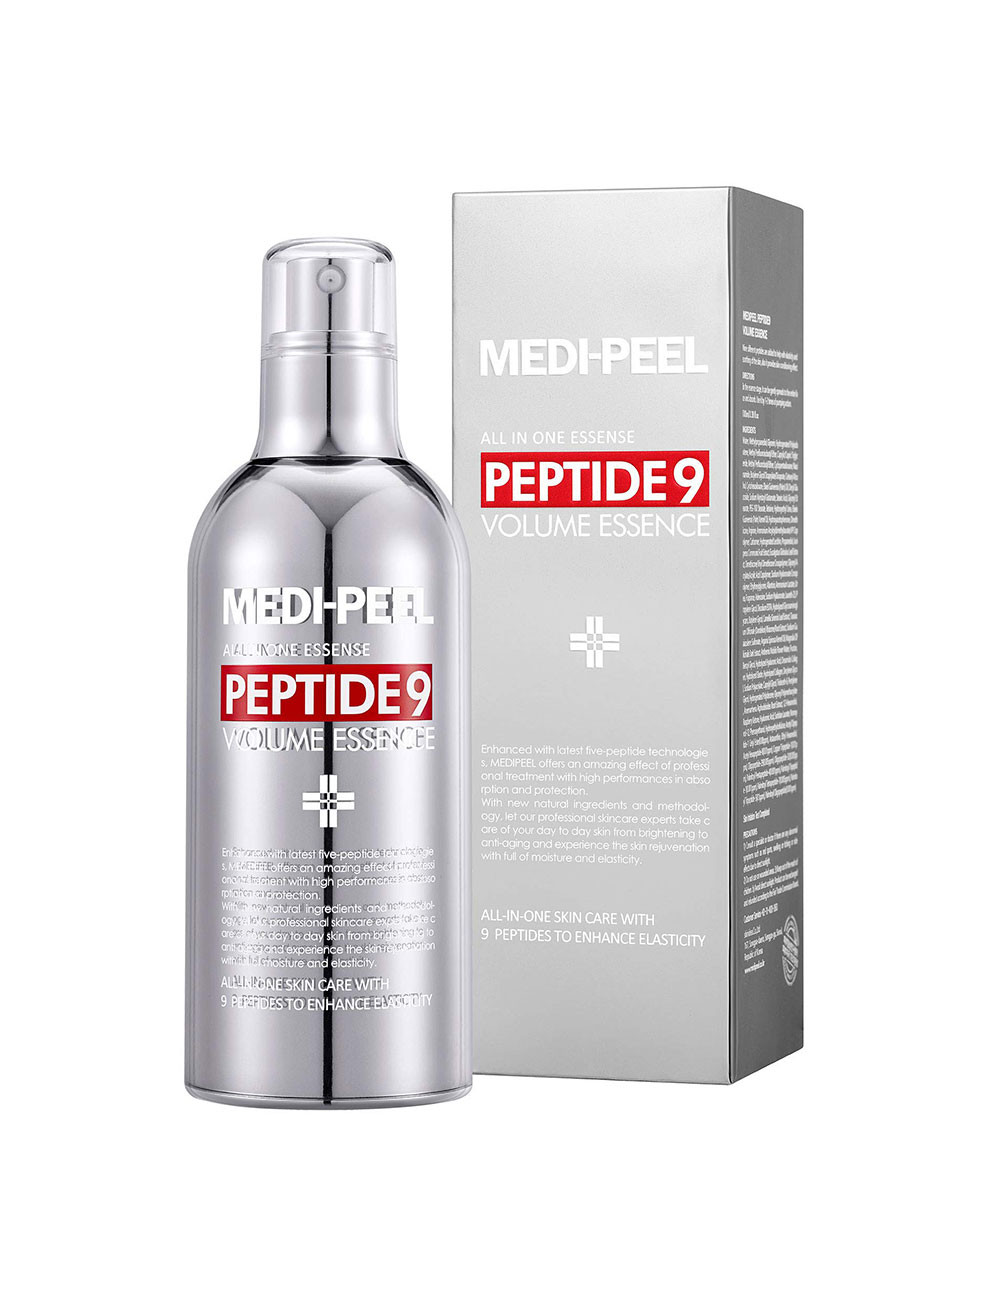 MEDI-PEEL Peptide 9 Volume...